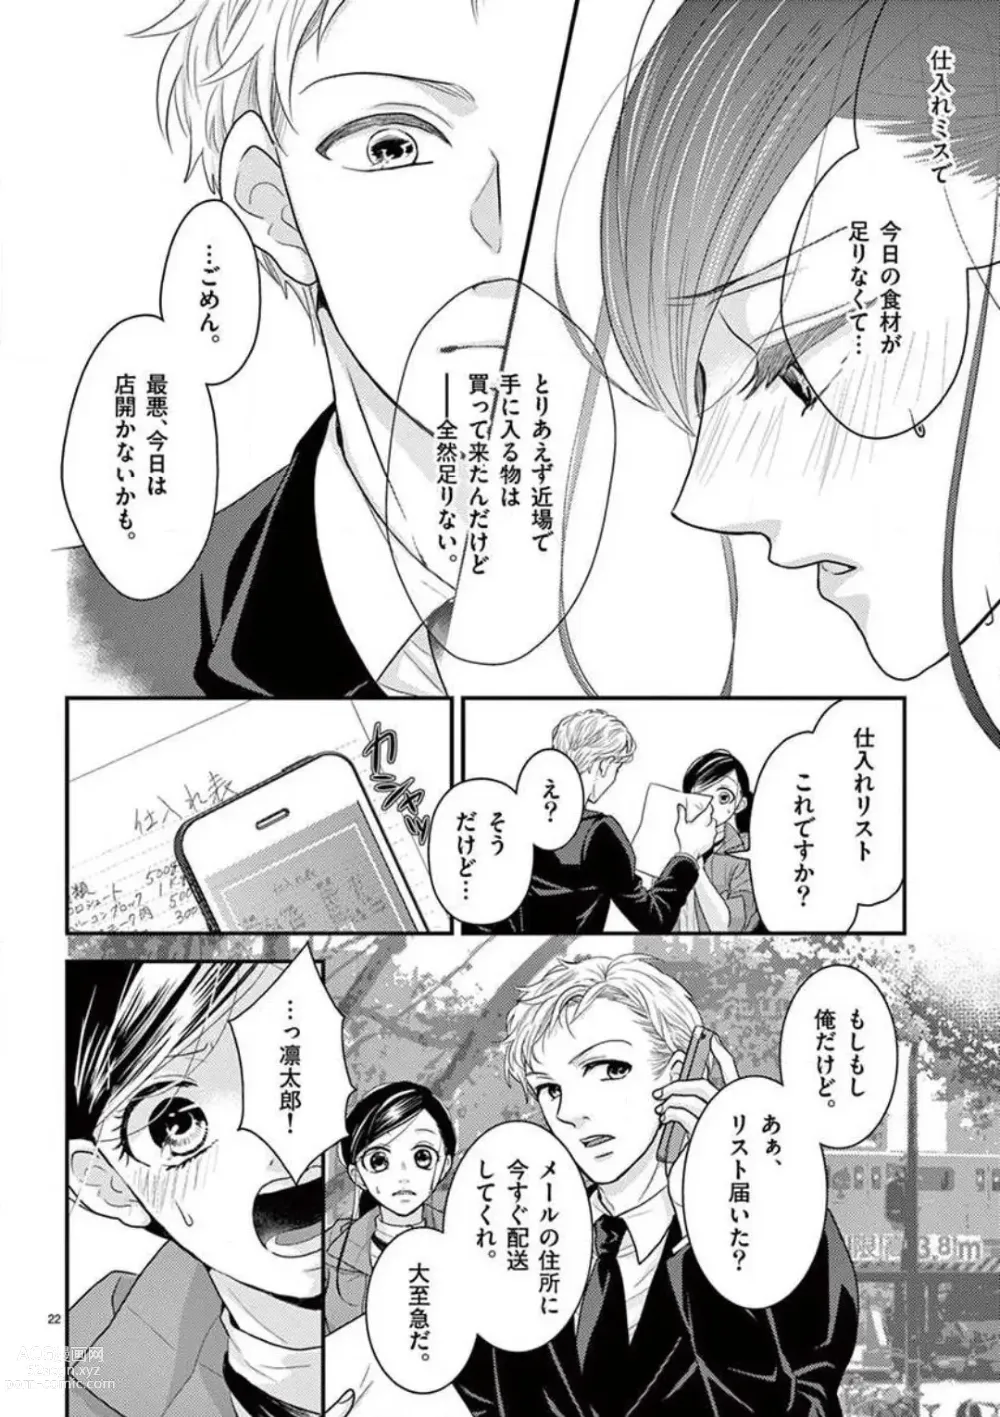 Page 22 of manga Yajū Suitchi ON!〜 Junjō Wanko wa Hageshi Sugi 〜